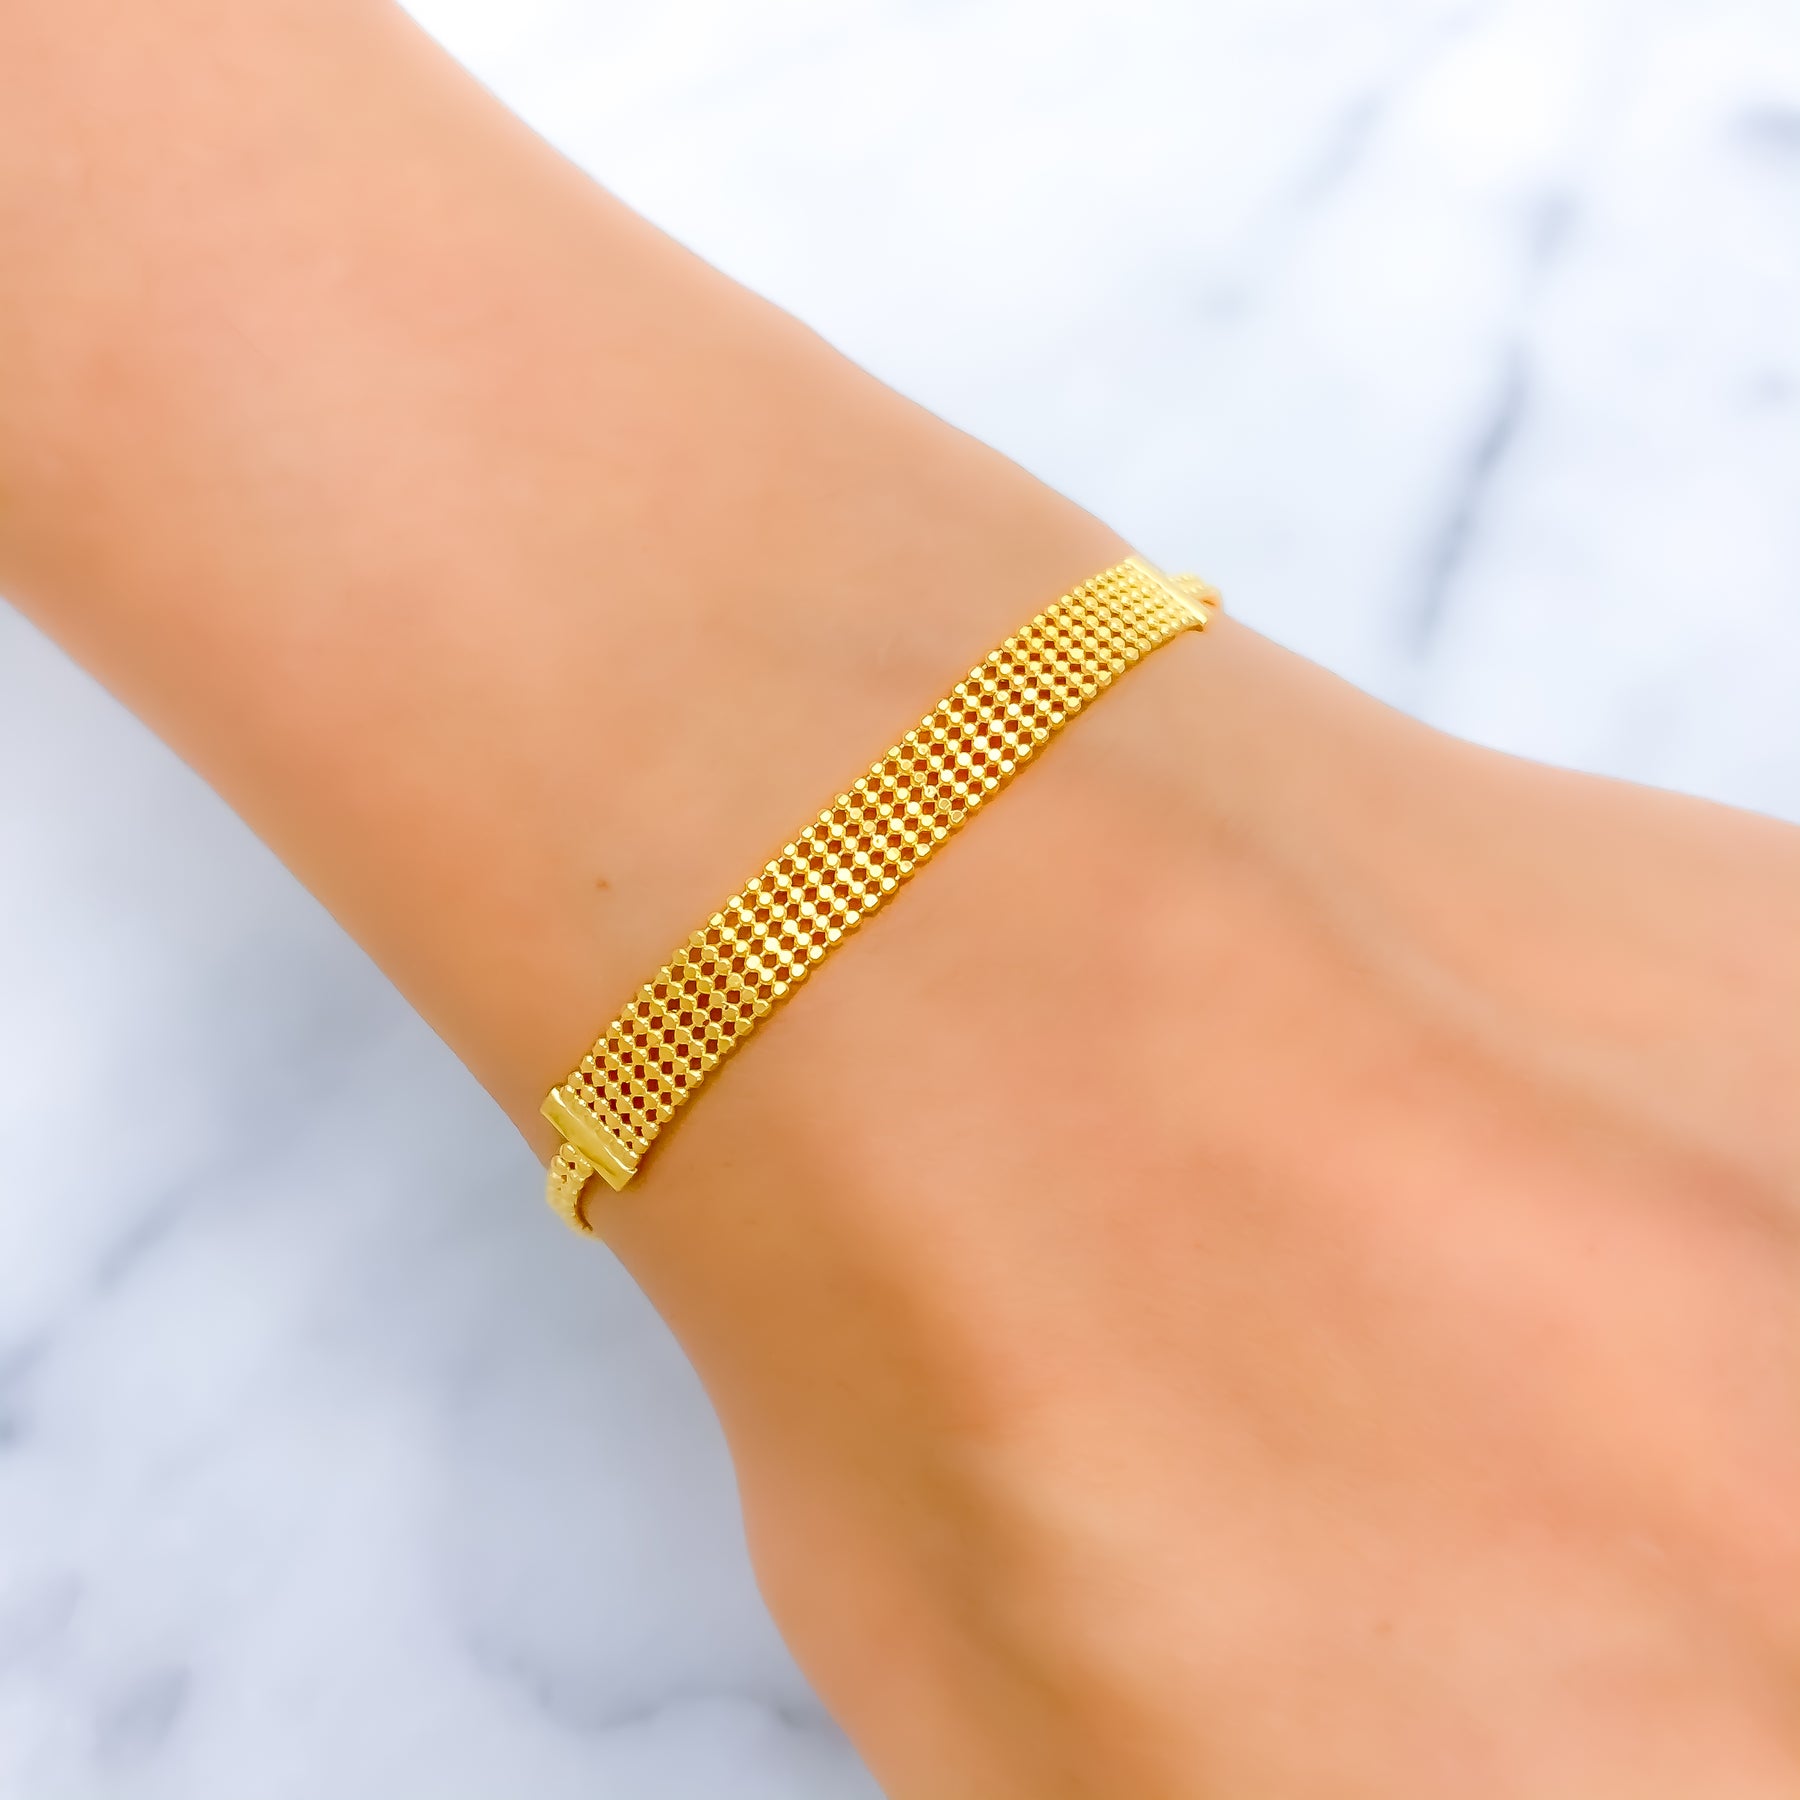 14k solid gold friendship bracelet – Vivien Frank Designs